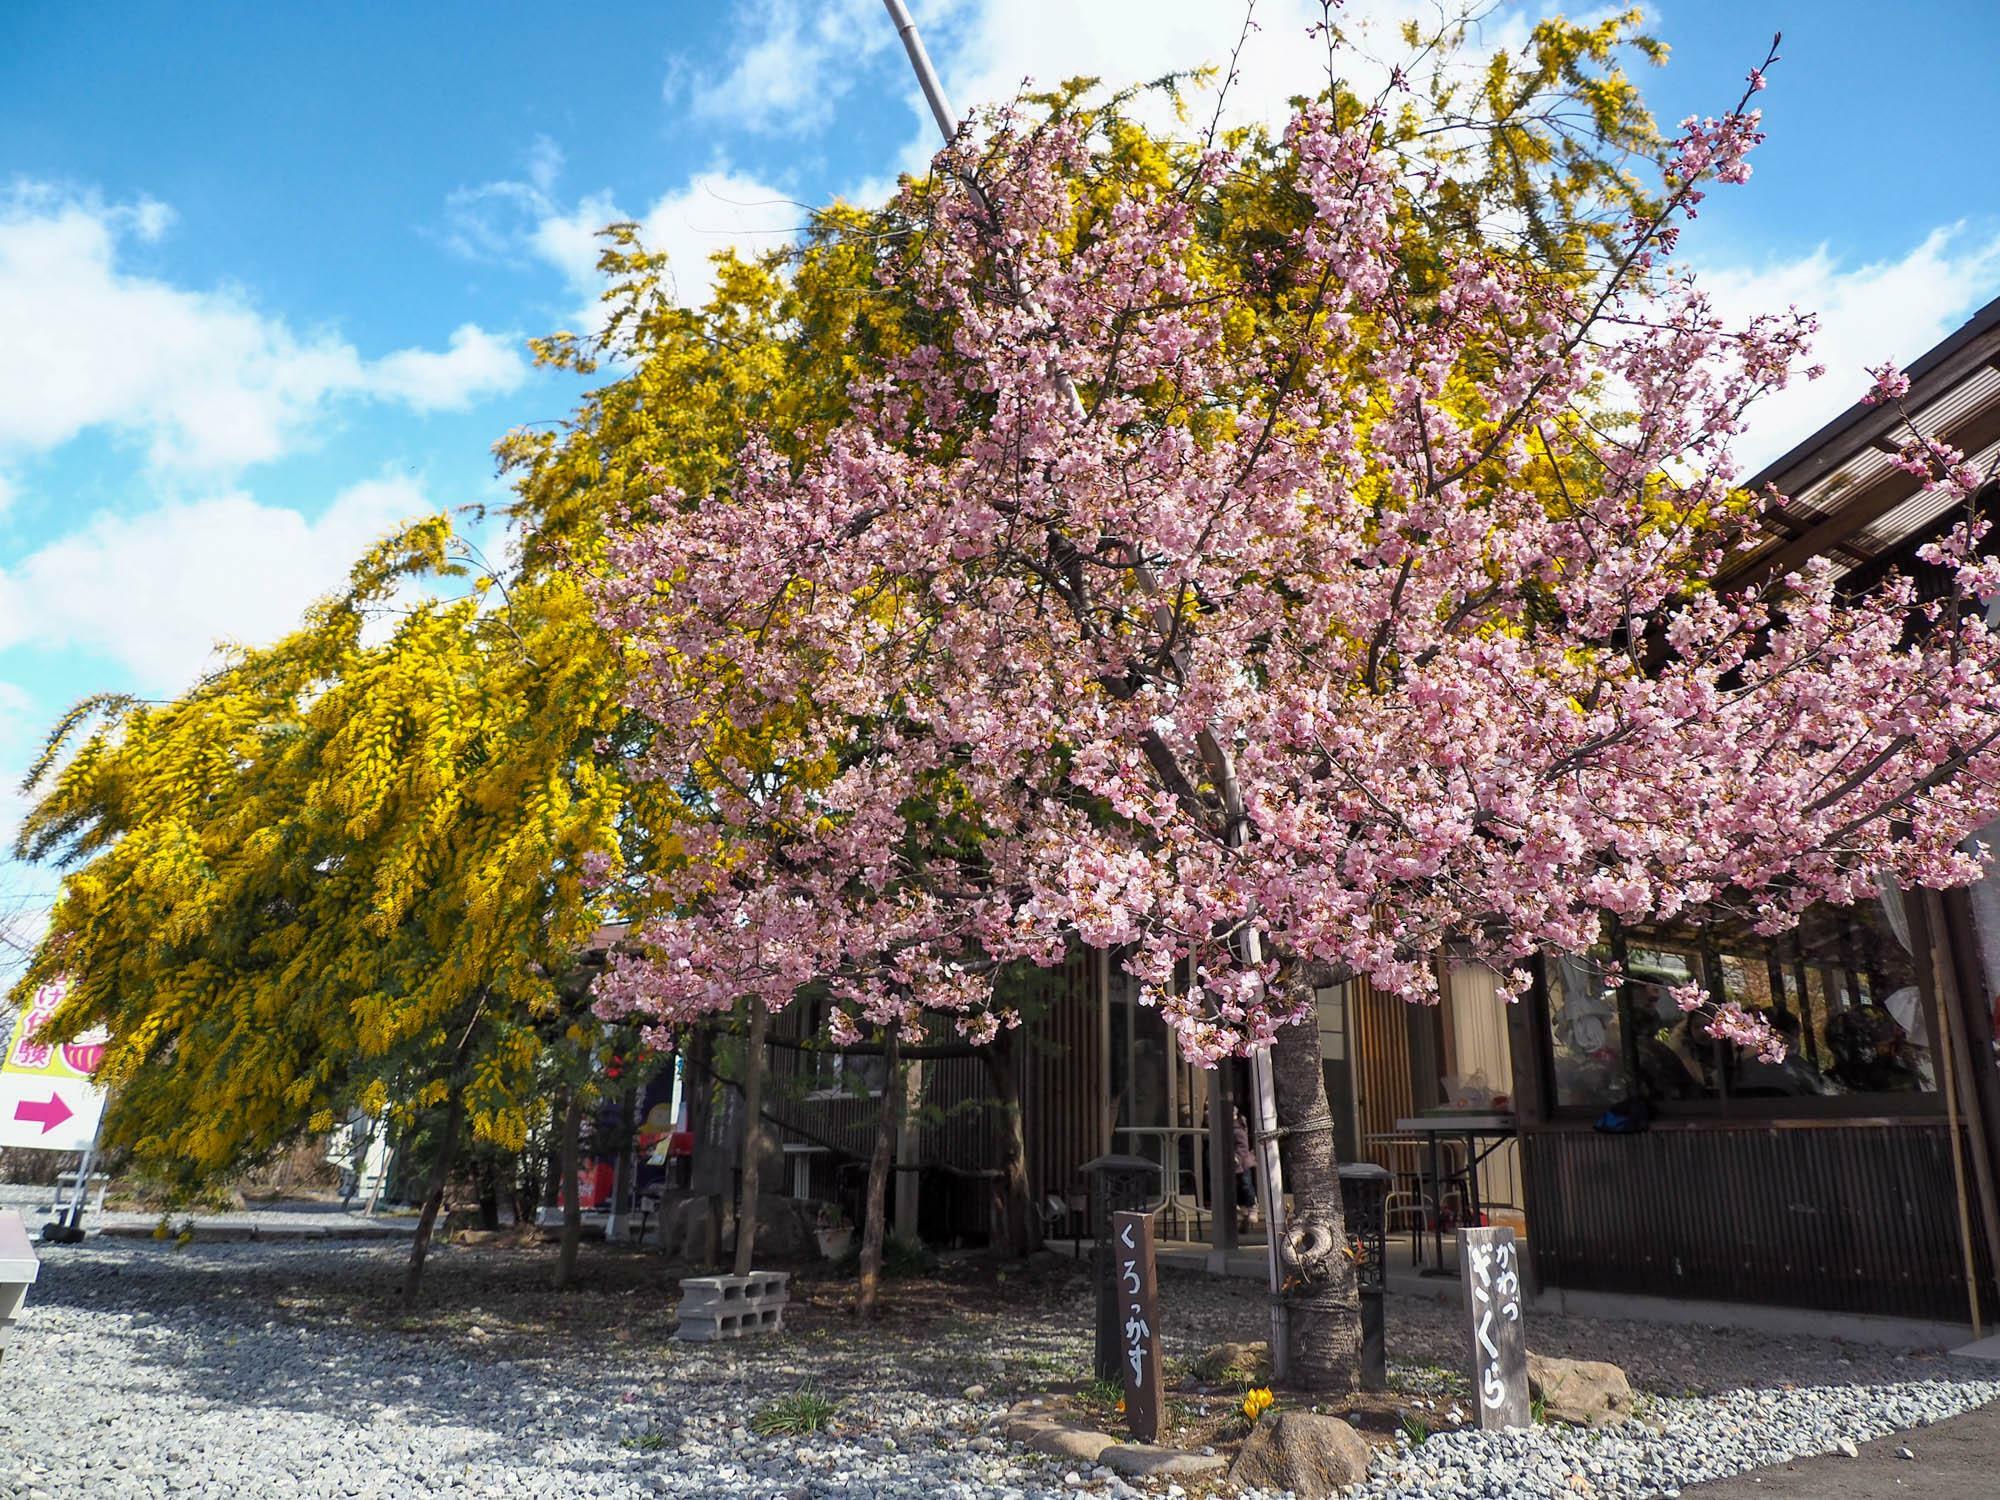 「売店だるだる」の側に立つ河津桜とミモザの木